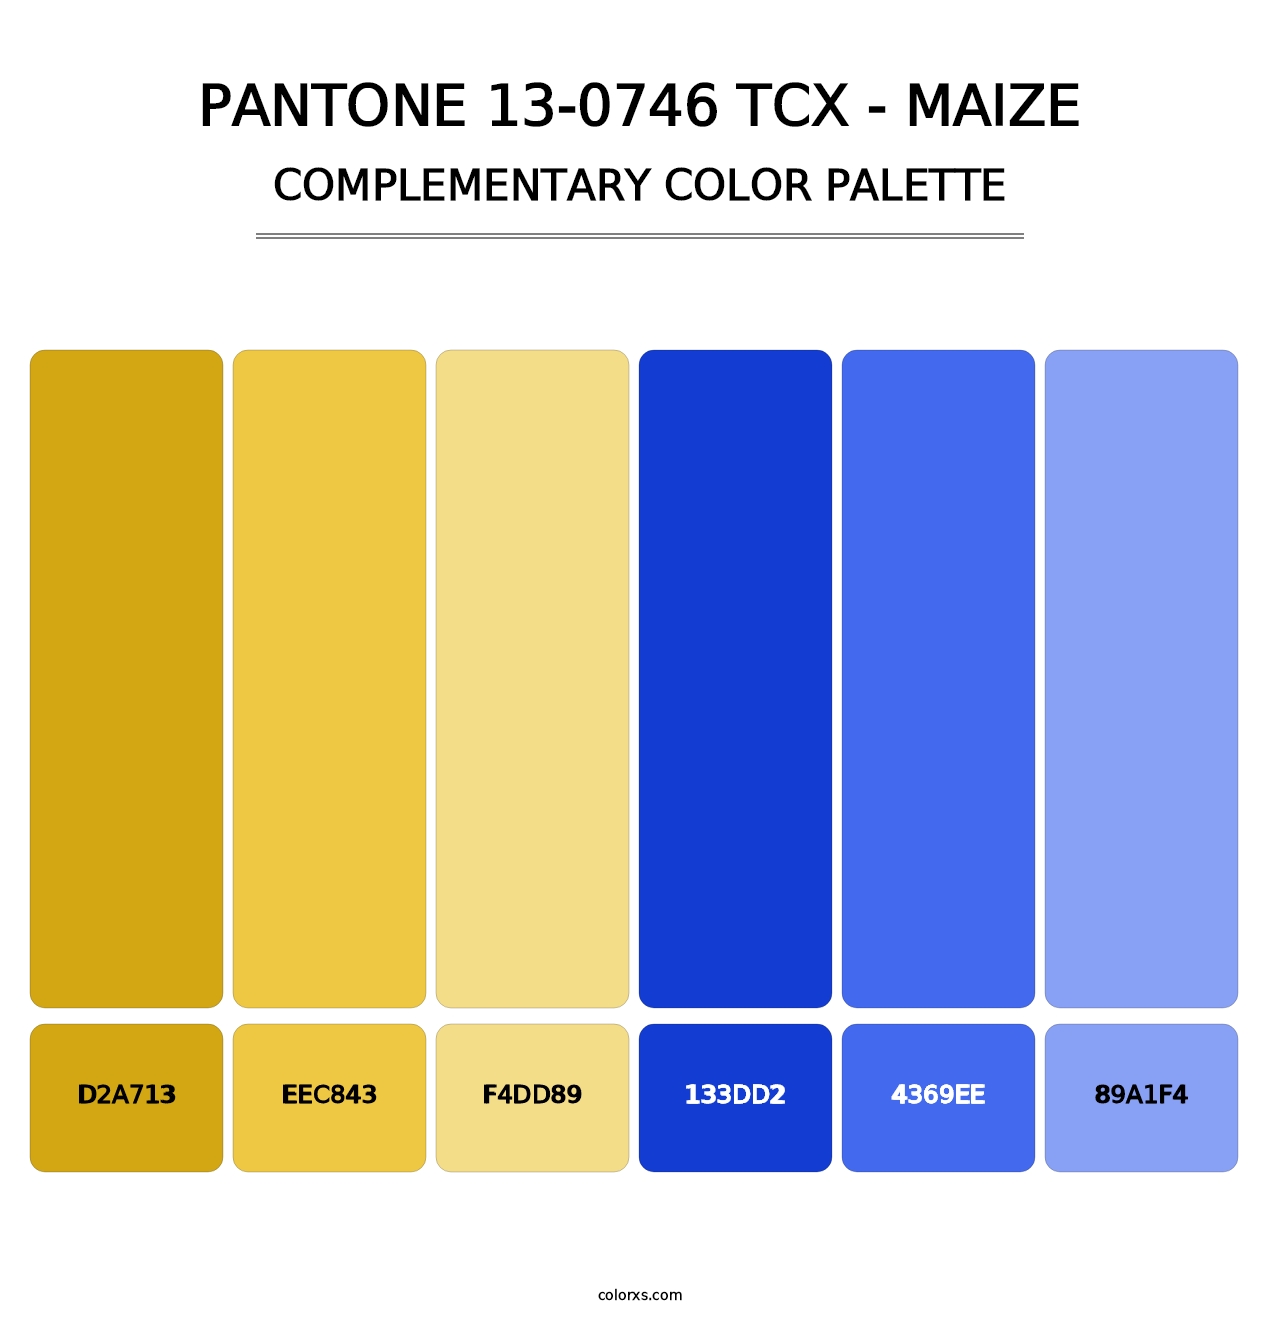 PANTONE 13-0746 TCX - Maize - Complementary Color Palette